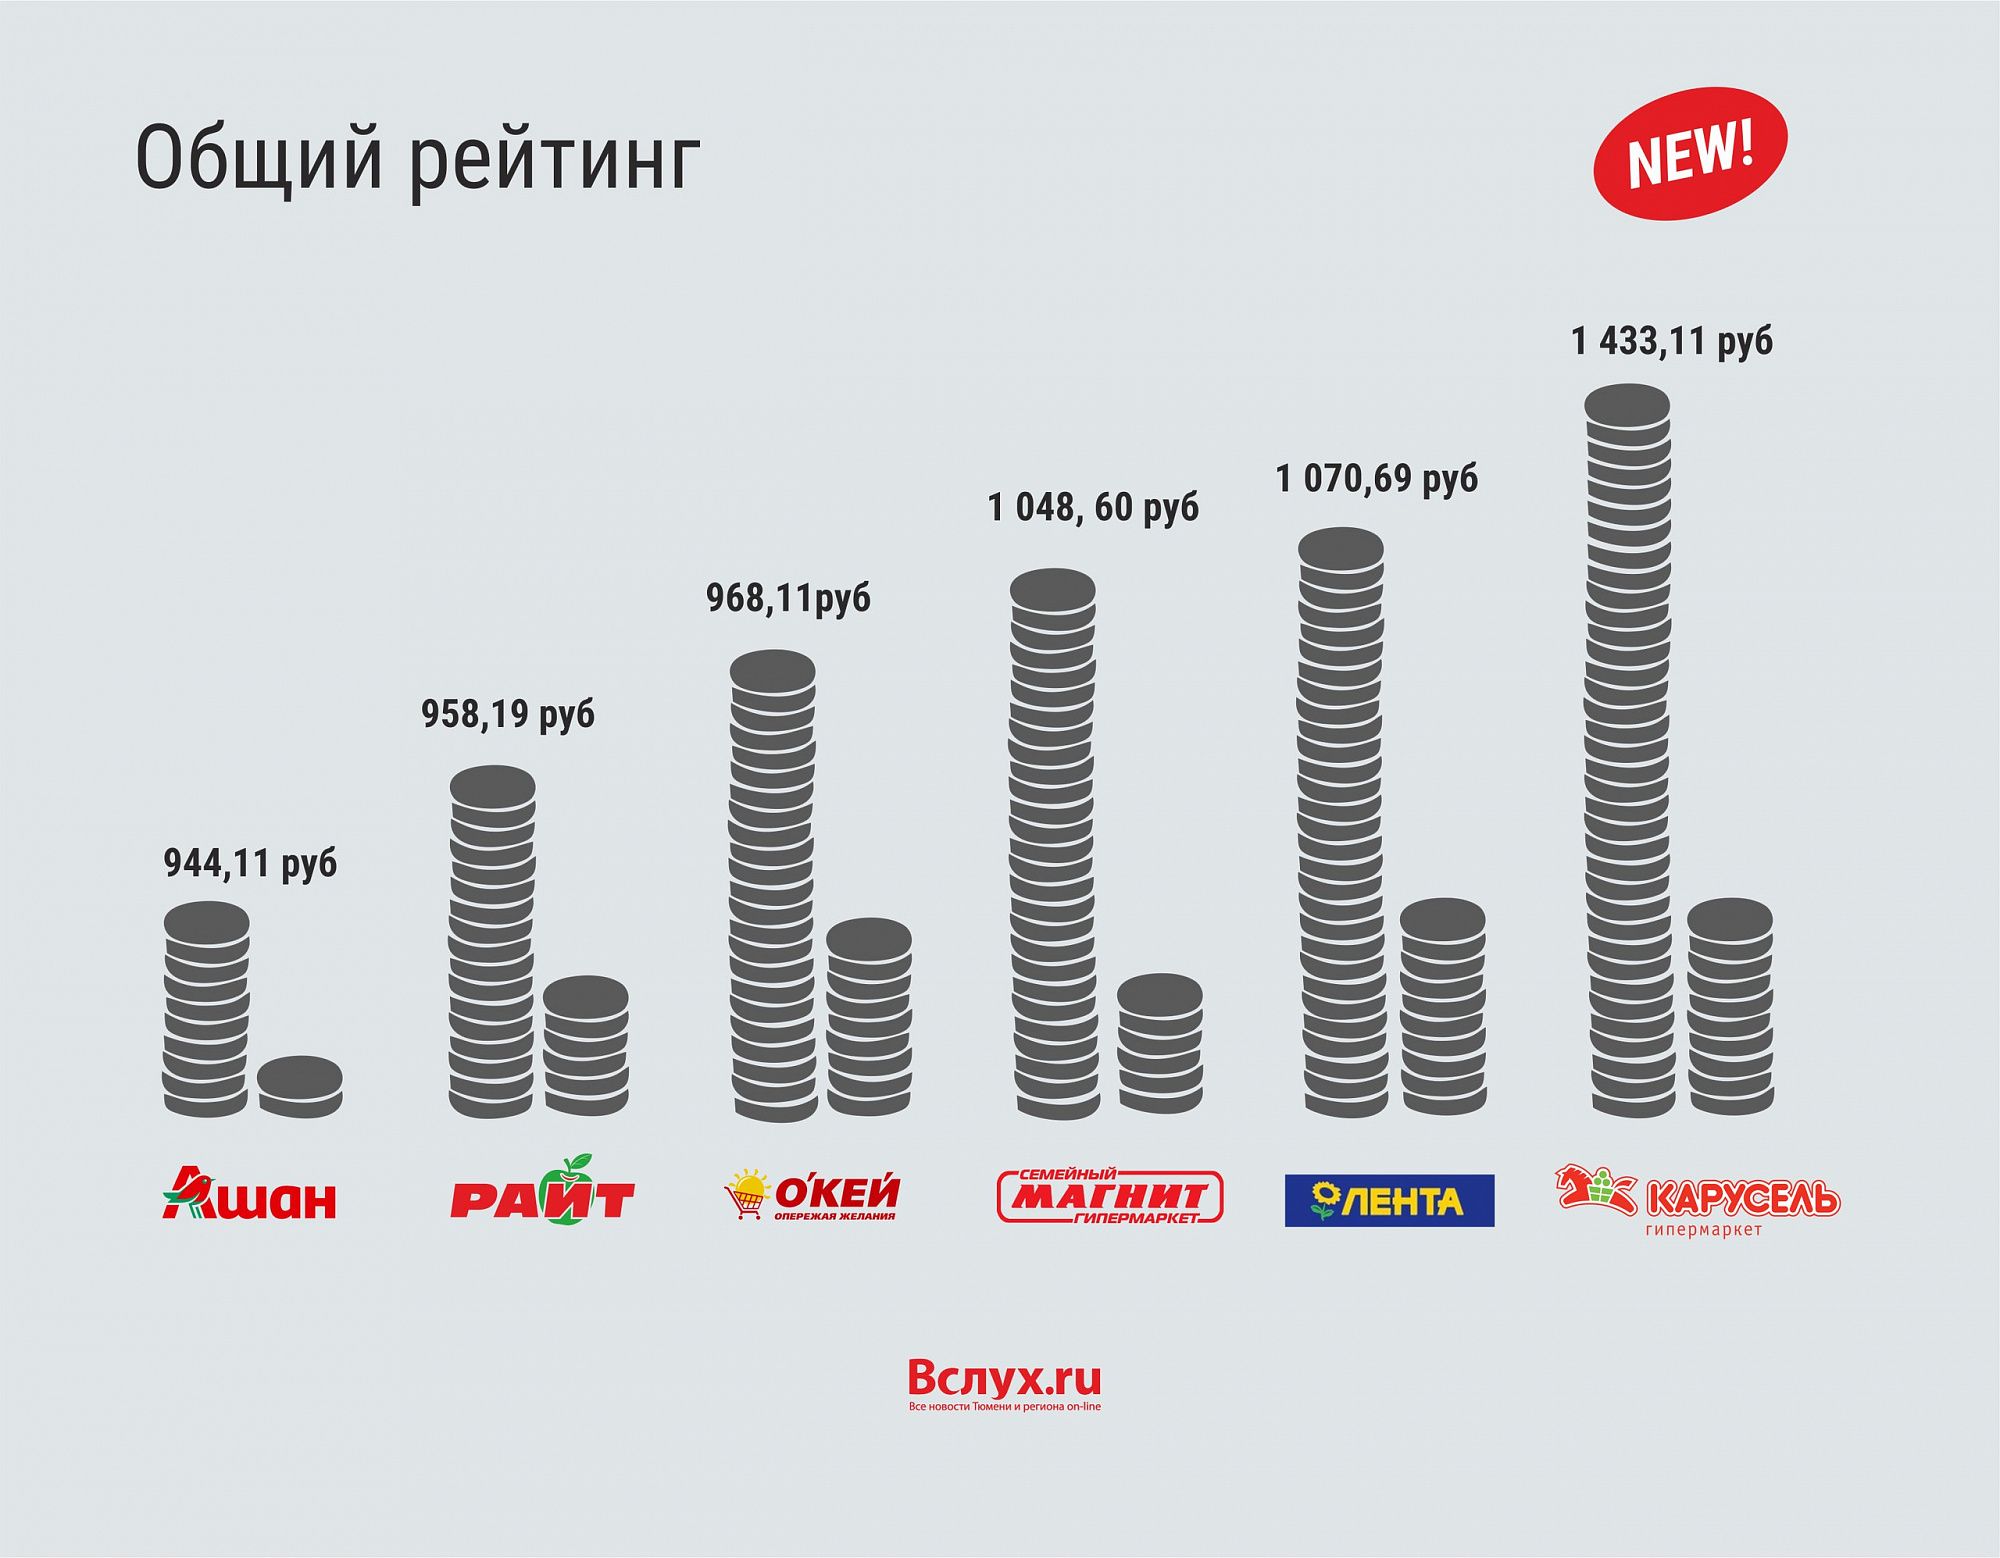 Где купить дешевые рубли